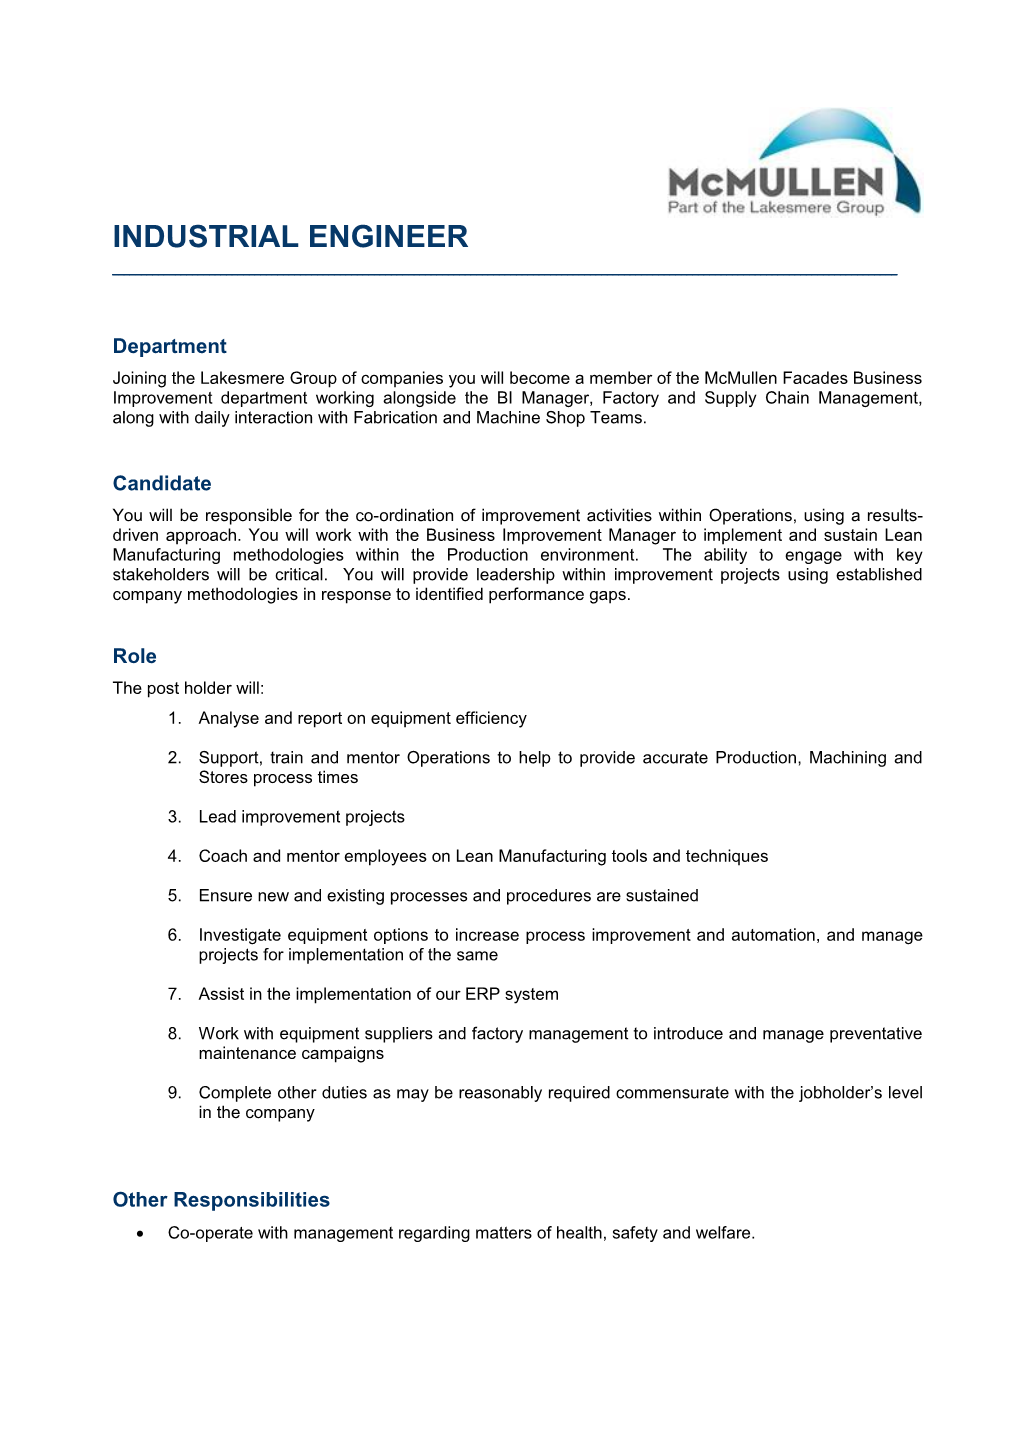 Industrial Engineer